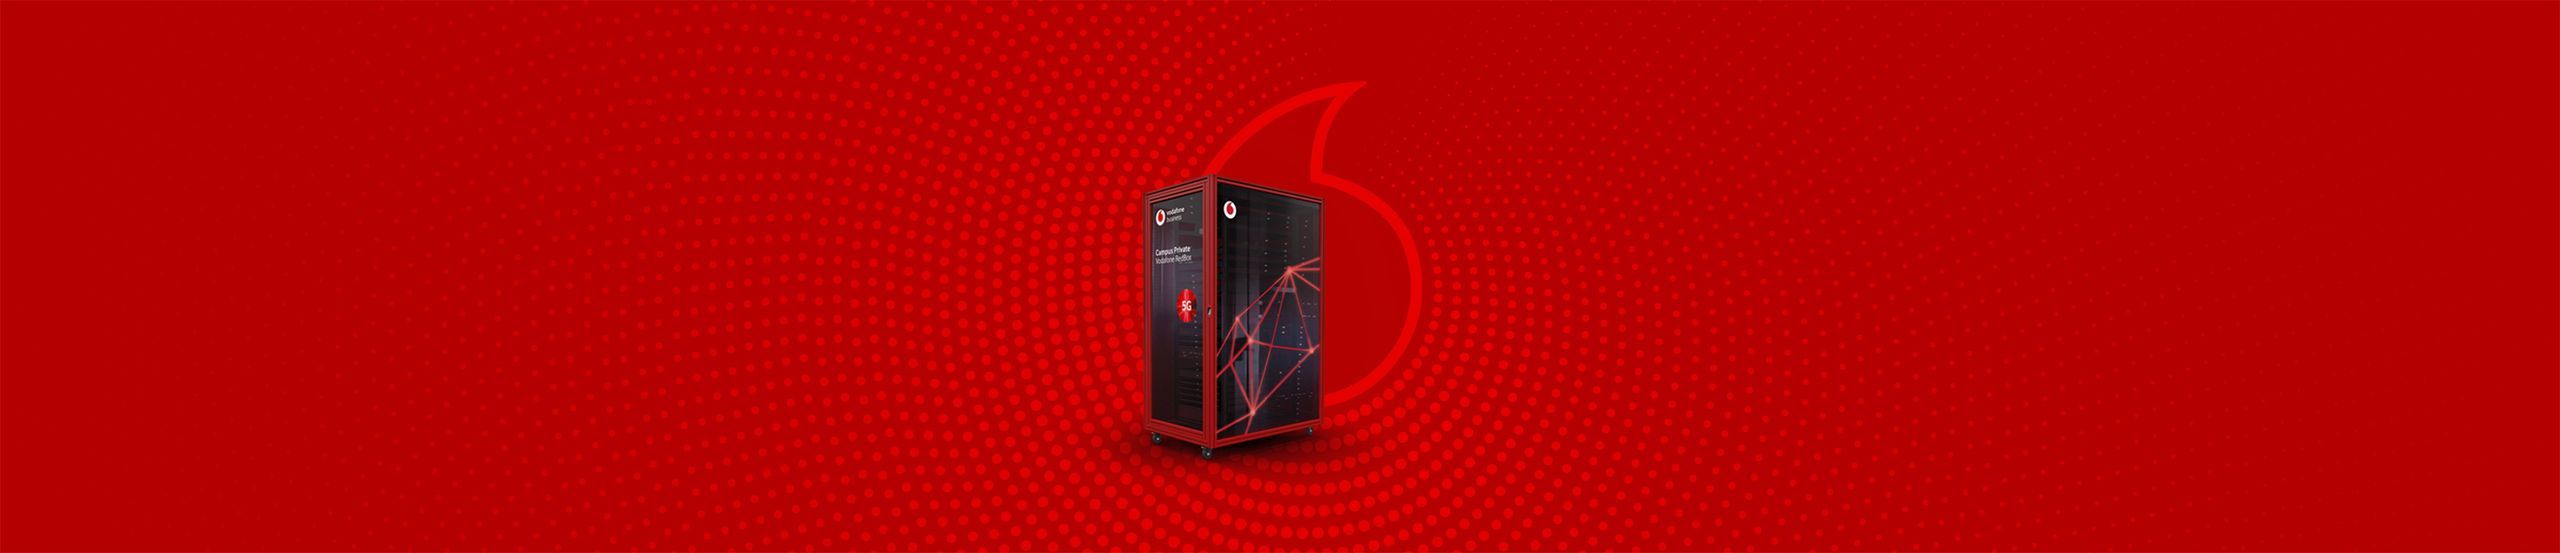 Vodafone RedBox für Campus-Netze.